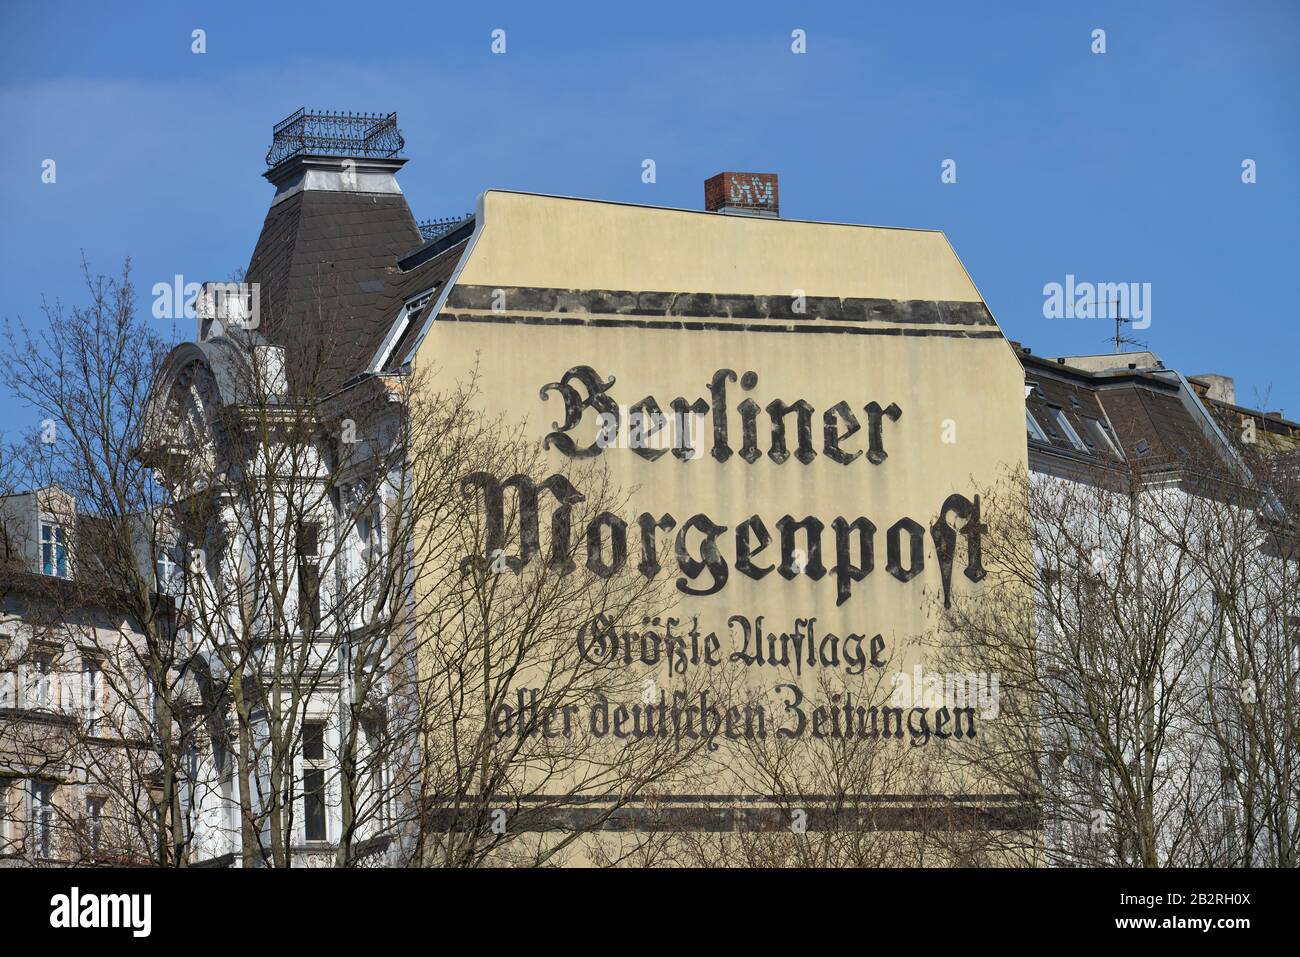 Werbung, Berliner Morgenpost, Wielandstrasse, Schoeneberg, Berlin, Deutschland Stock Photo